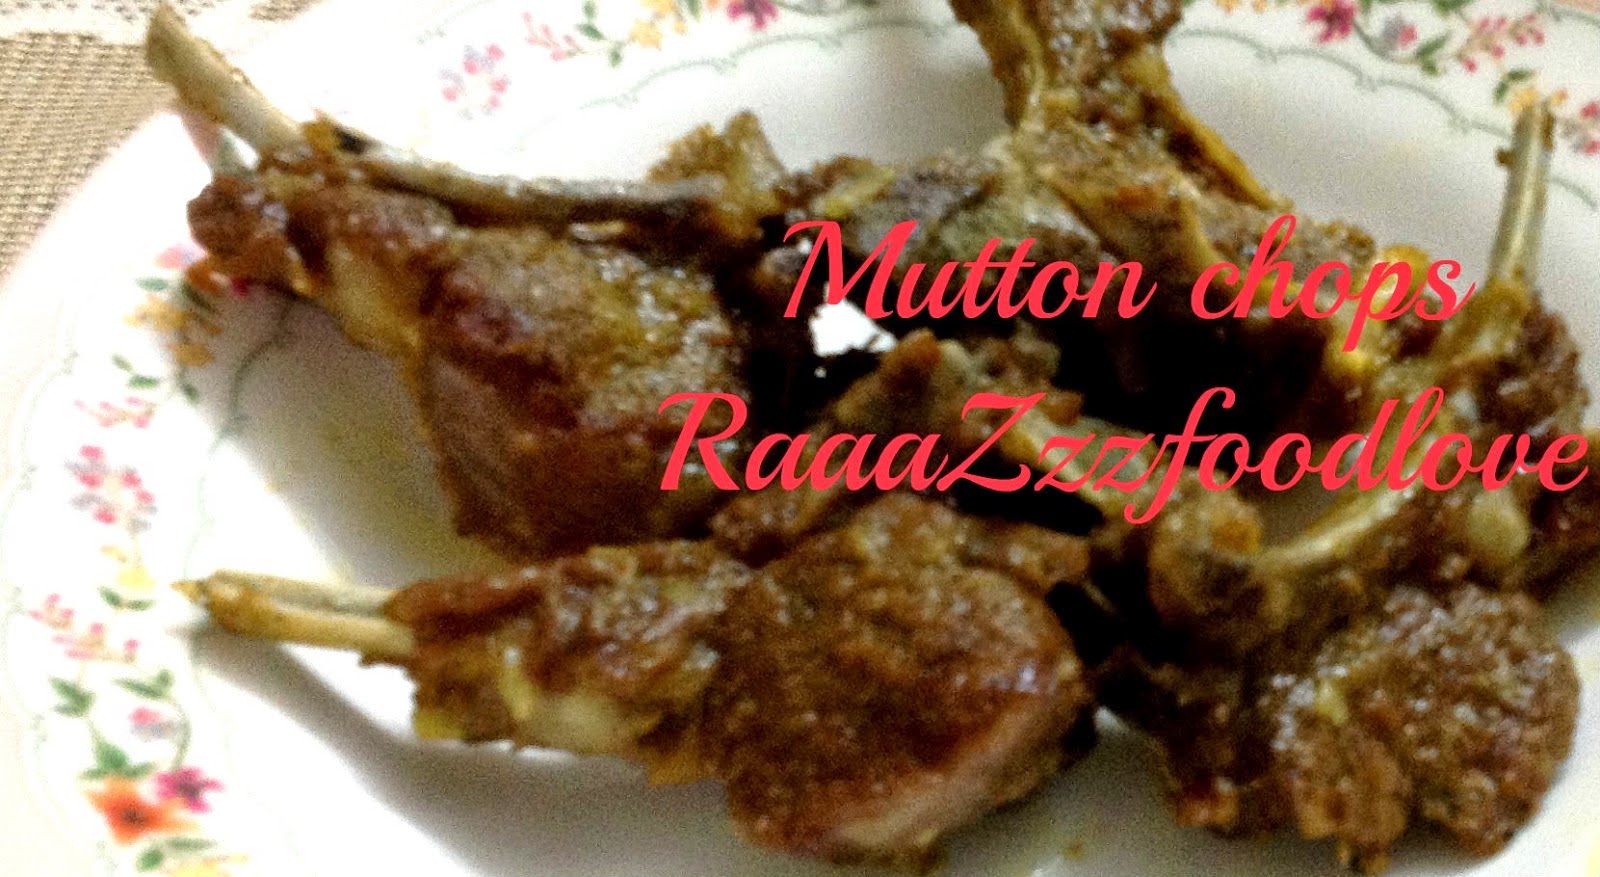 http://raaazzzfoodlove.blogspot.in/2013/05/mutton-chops.html